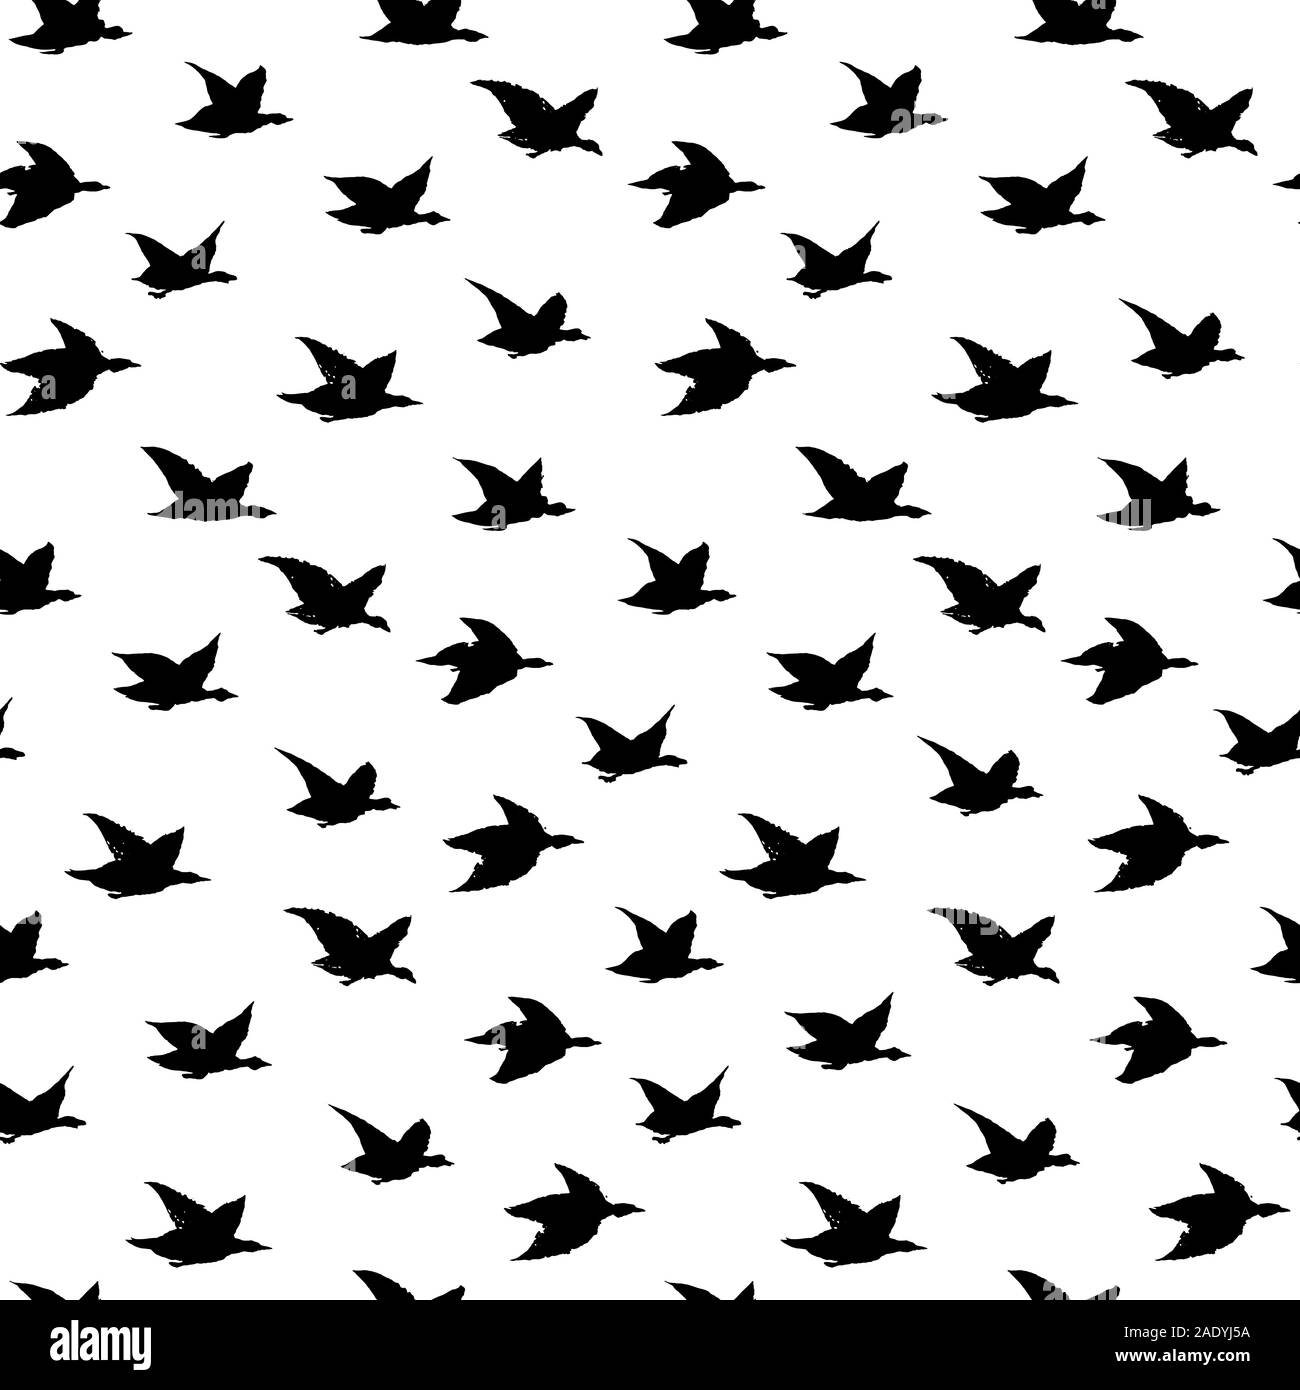 Kran Vögel Japanische nahtlose Muster mit einfachen Vögel Silhouetten für Tapeten, Kulissen oder Stoff Textil. Flying eleganten schwarzen Schwalben, handgezeichneten Tinte Abbildung auf weißen blackground Stock Vektor